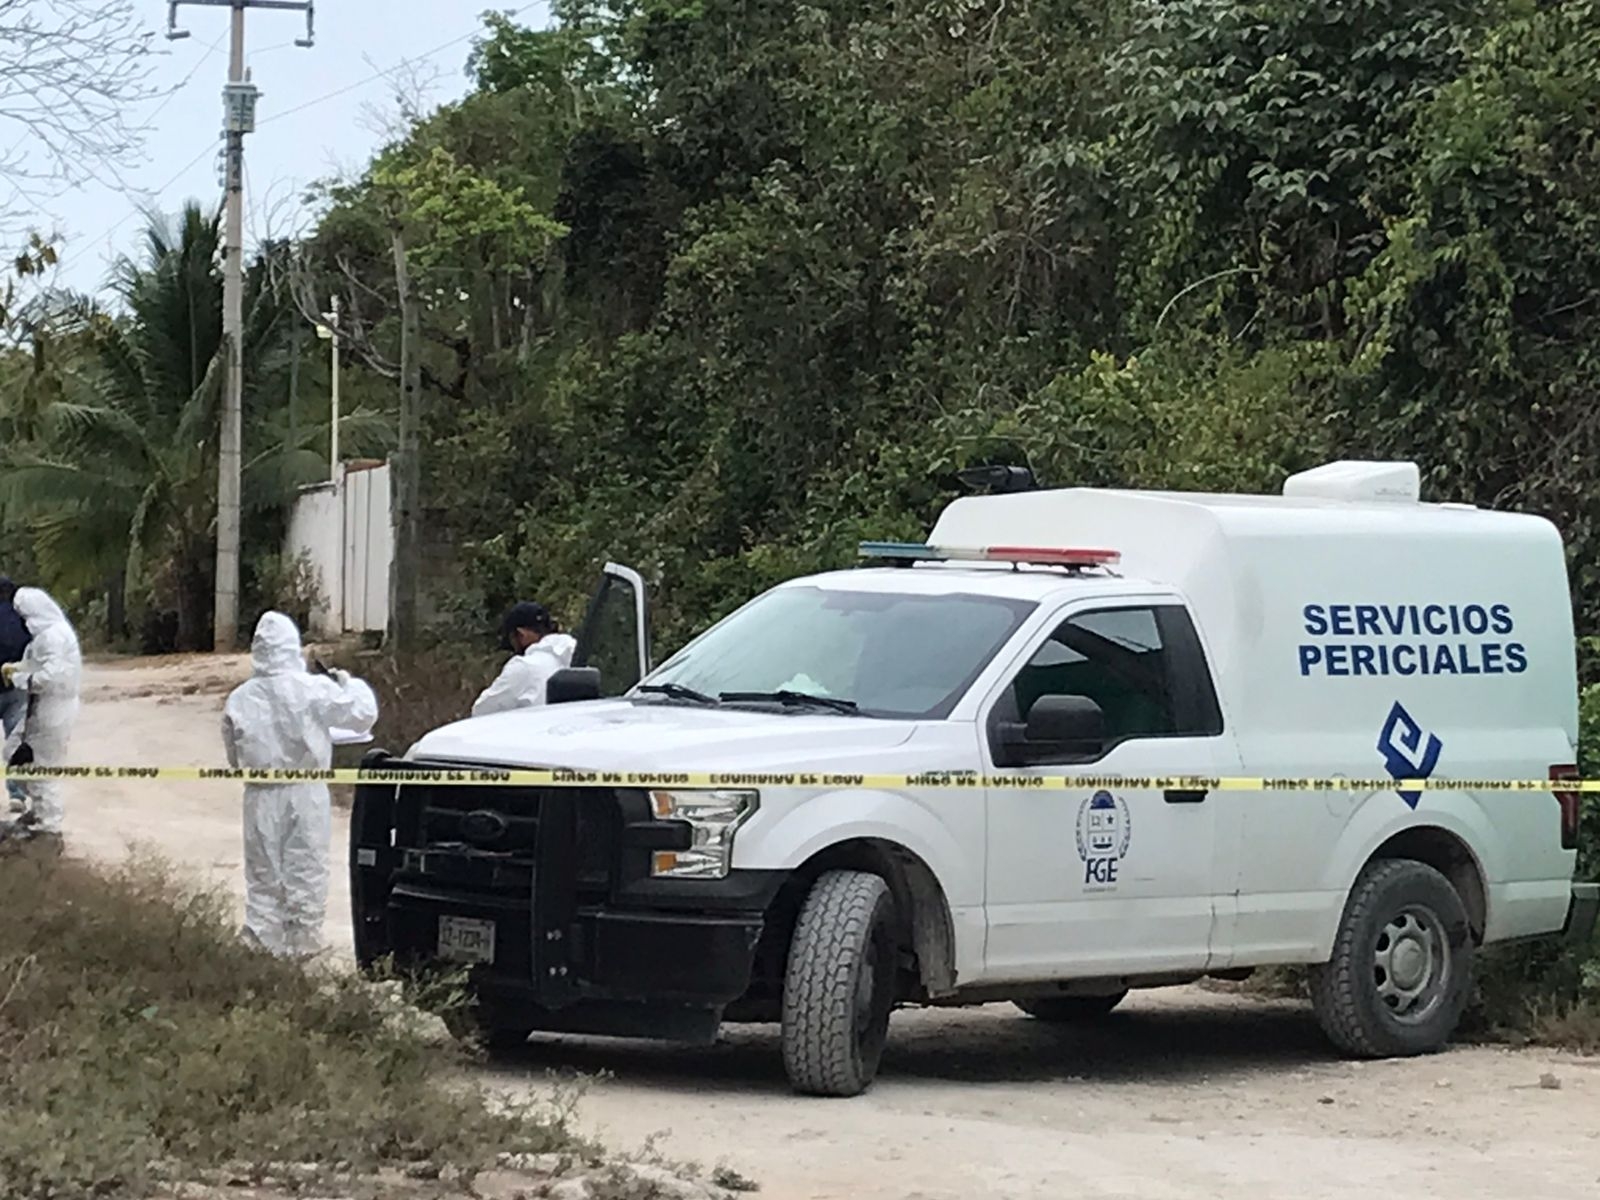 Encuentran restos humanos dentro de bolsas en Cancún